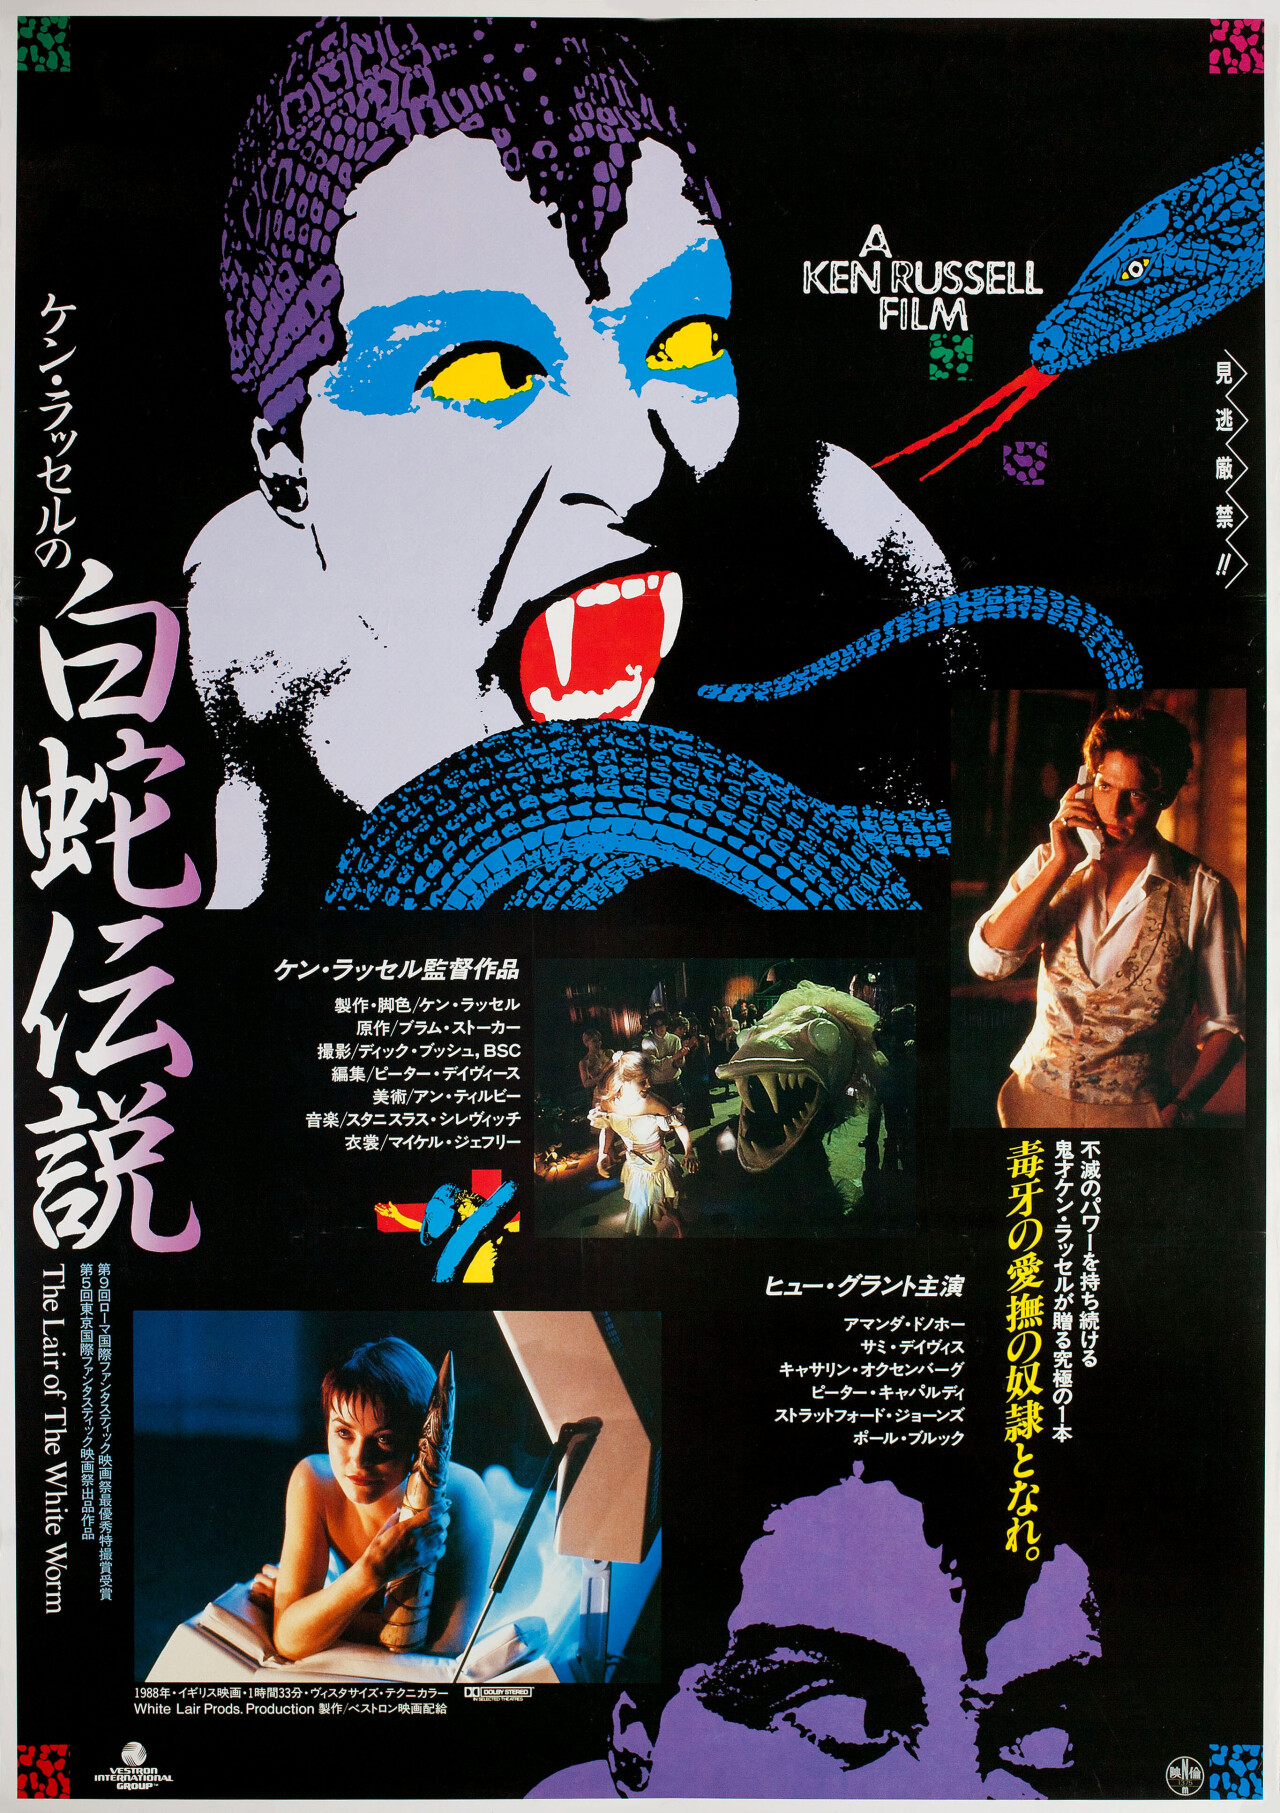 Логово Белого Червя (The Lair of the White Worm, 1988), режиссёр Кен Рассел, японский постер к фильму (графический дизайн, 1988 год)